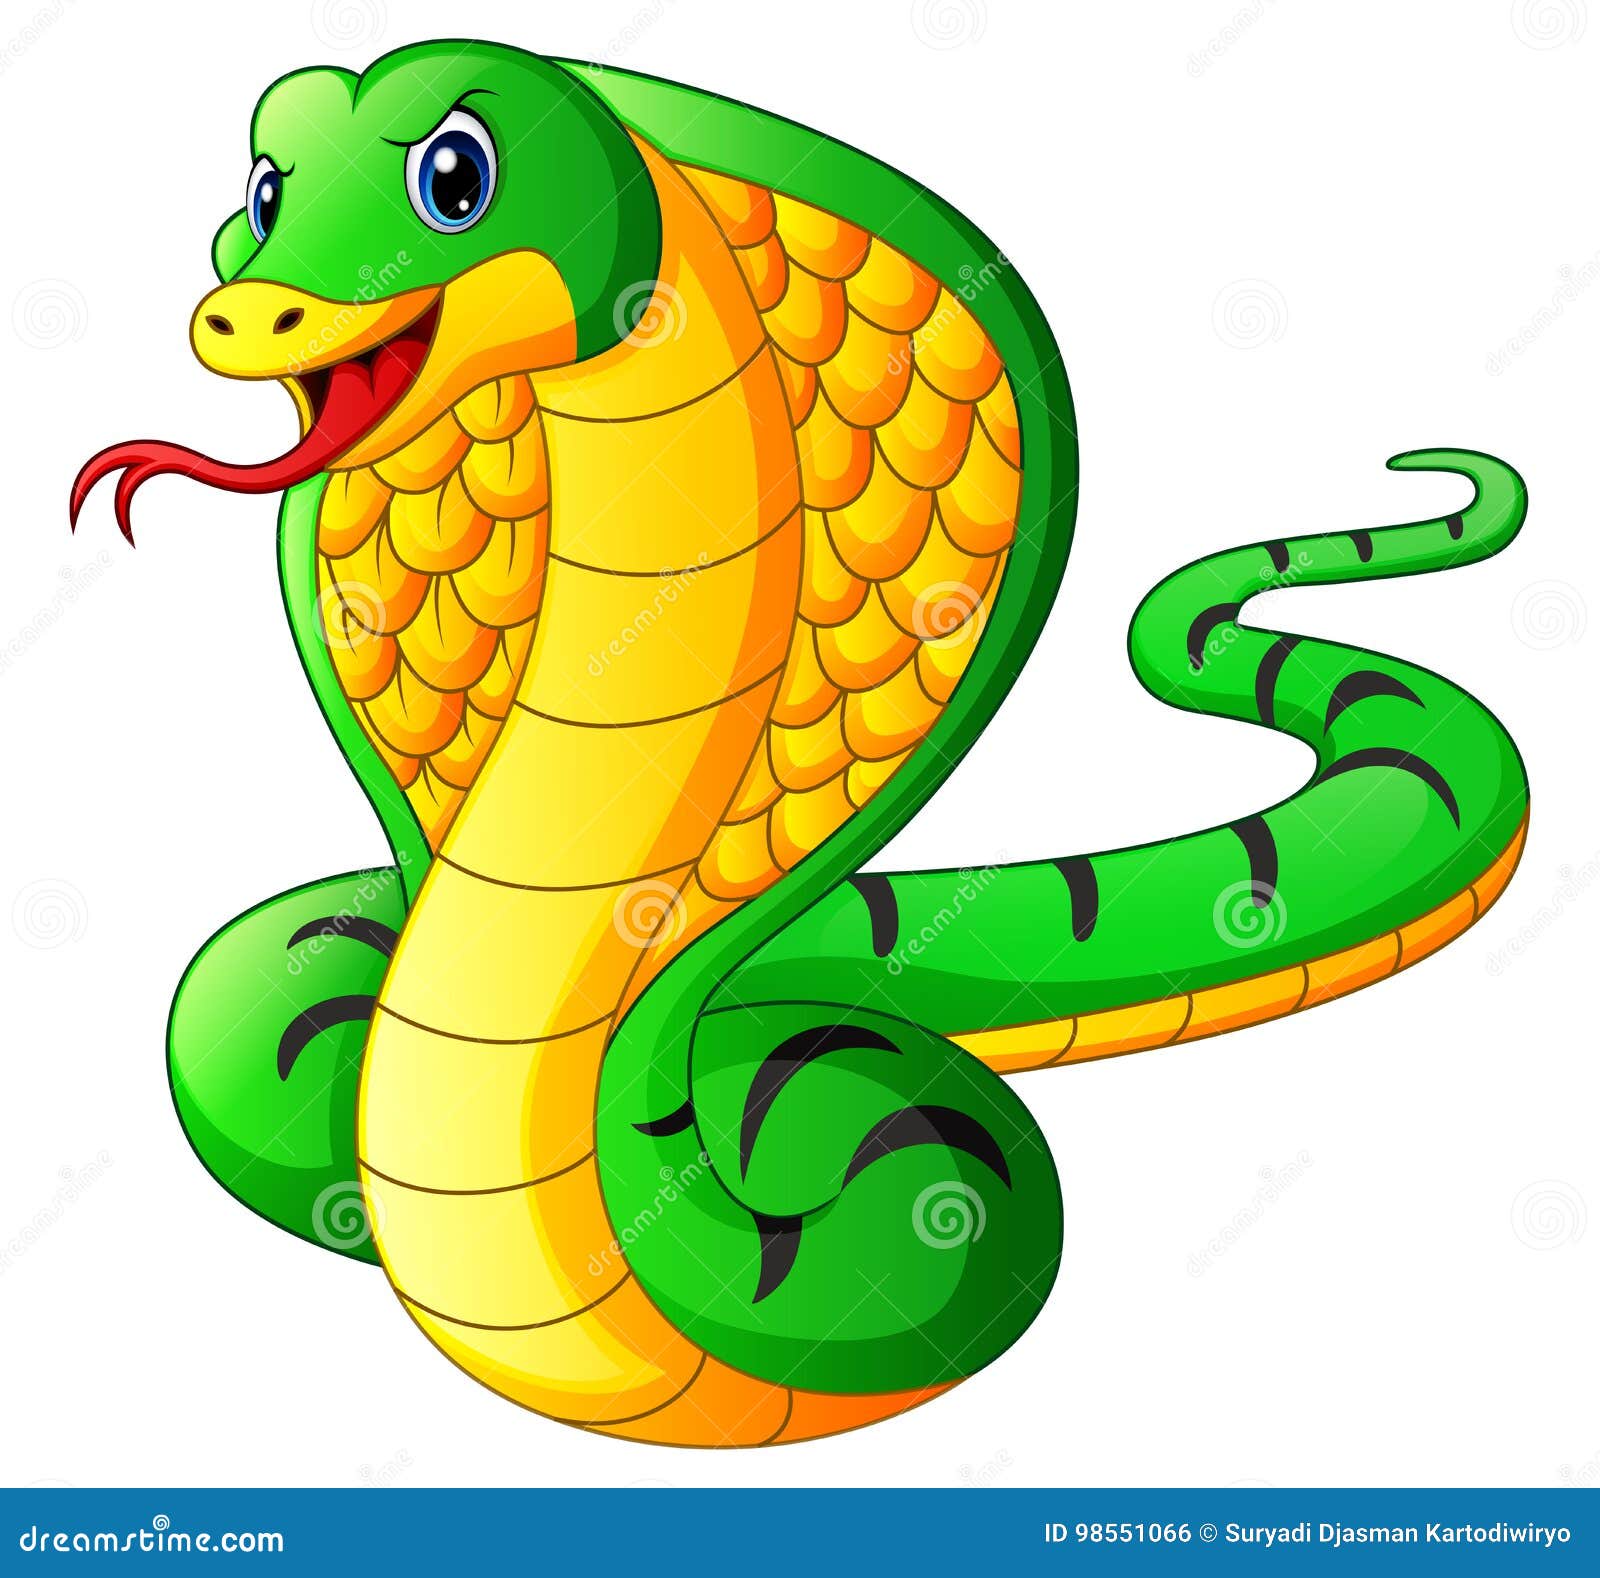 Cobra snake cartoon stock vector. Illustration of dangerous - 98551066